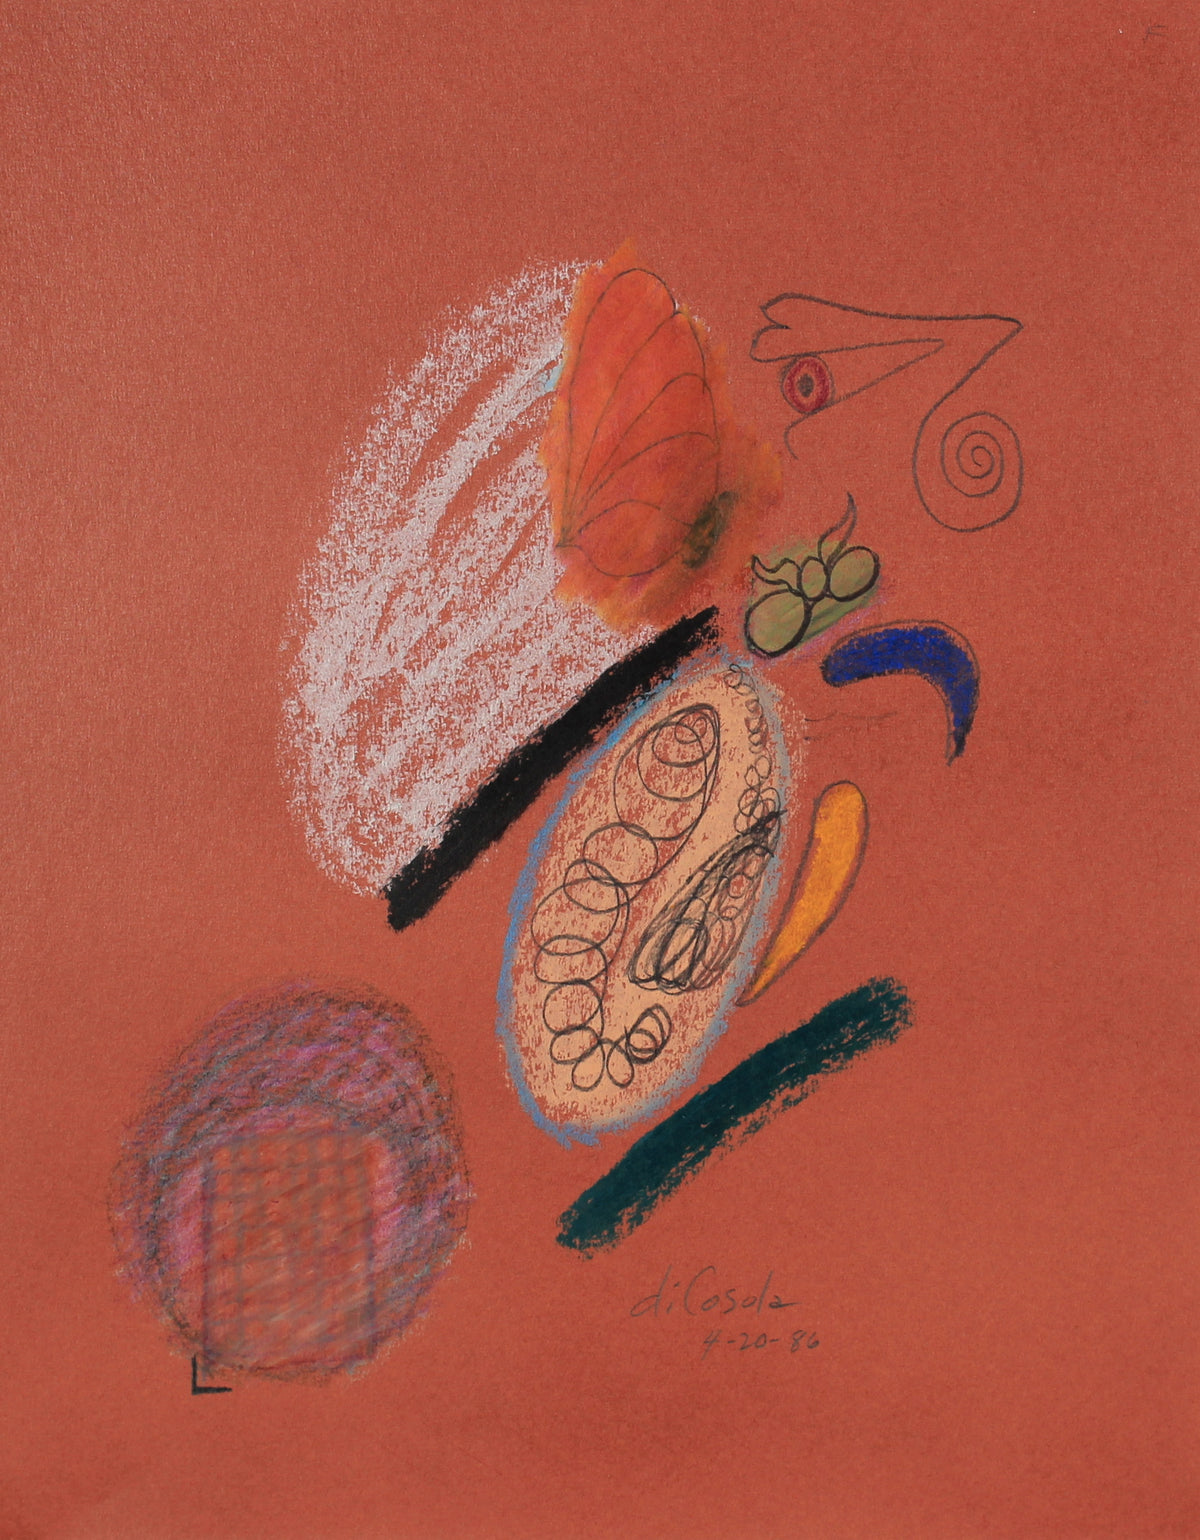 Colorful Abstract Sketch &lt;br&gt;1986 Pastel &lt;br&gt;&lt;br&gt;#83840